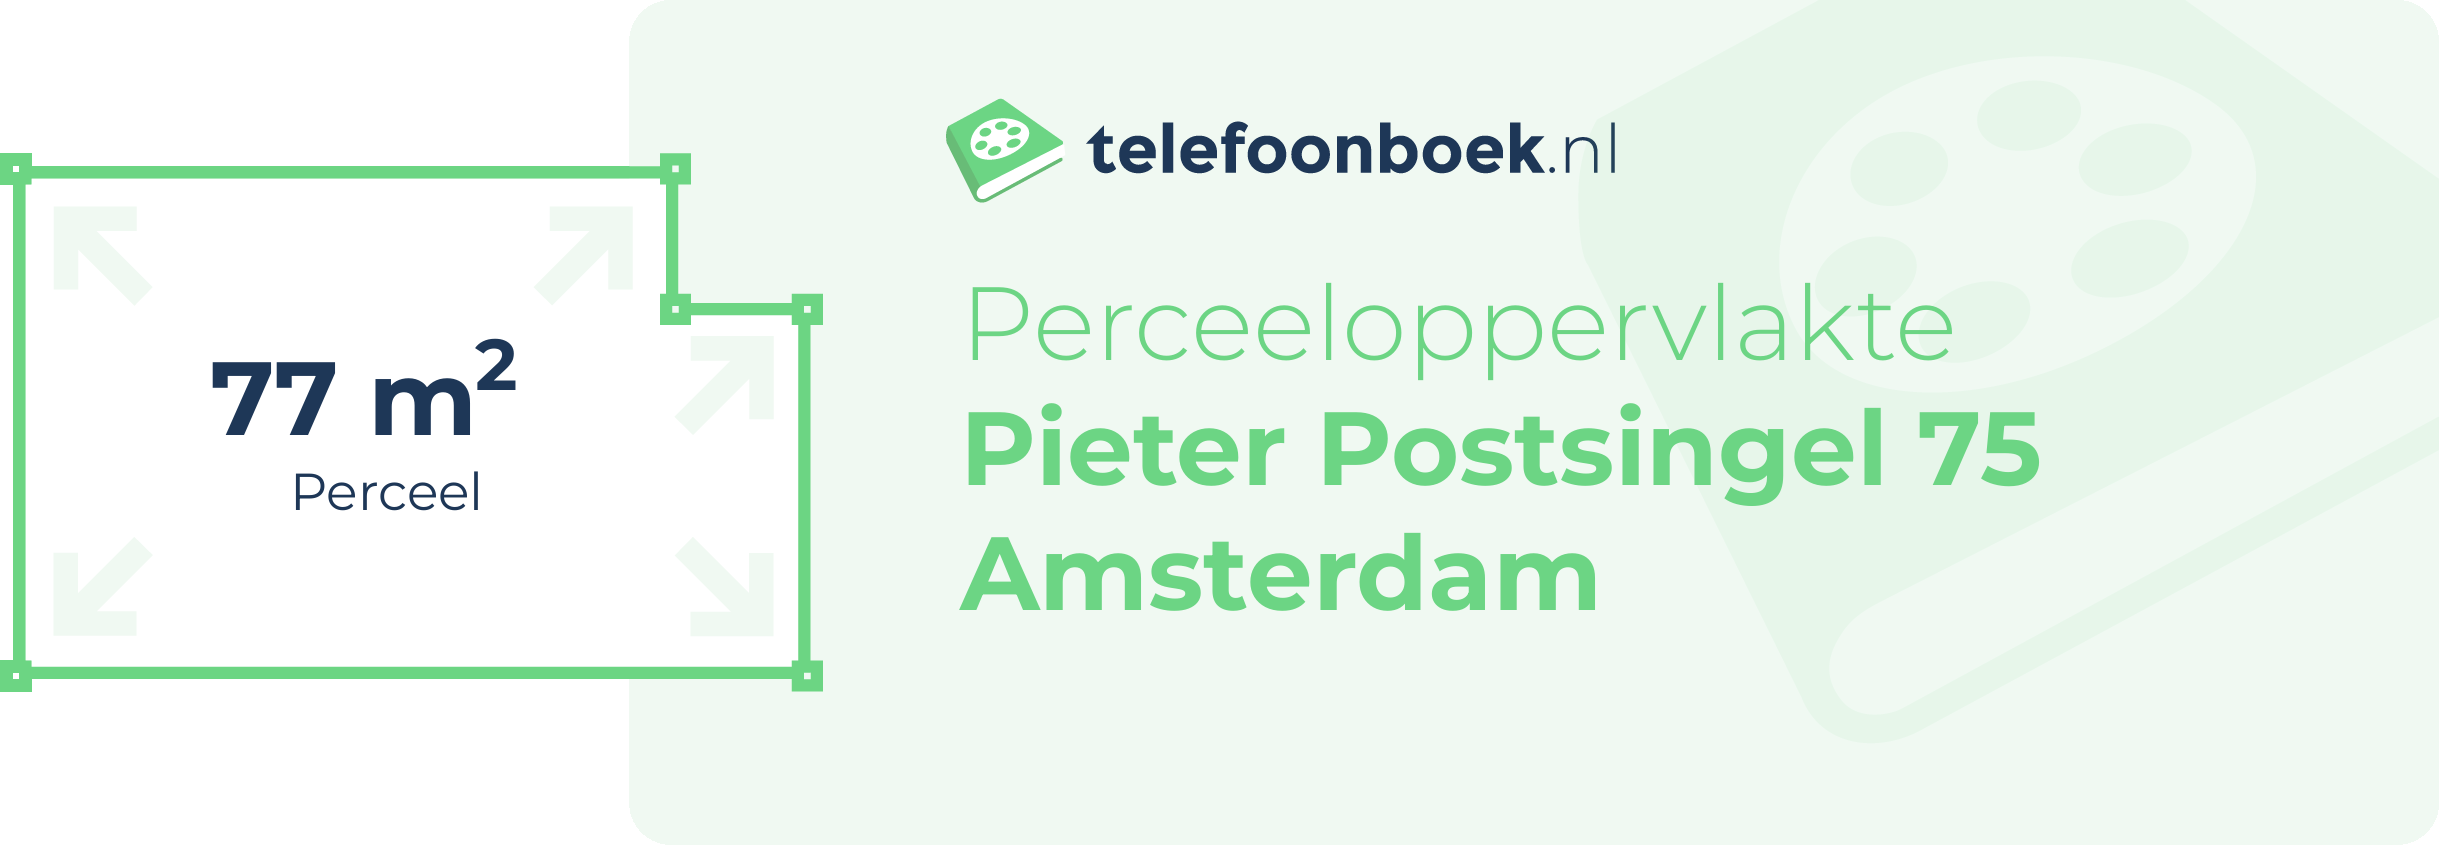 Perceeloppervlakte Pieter Postsingel 75 Amsterdam